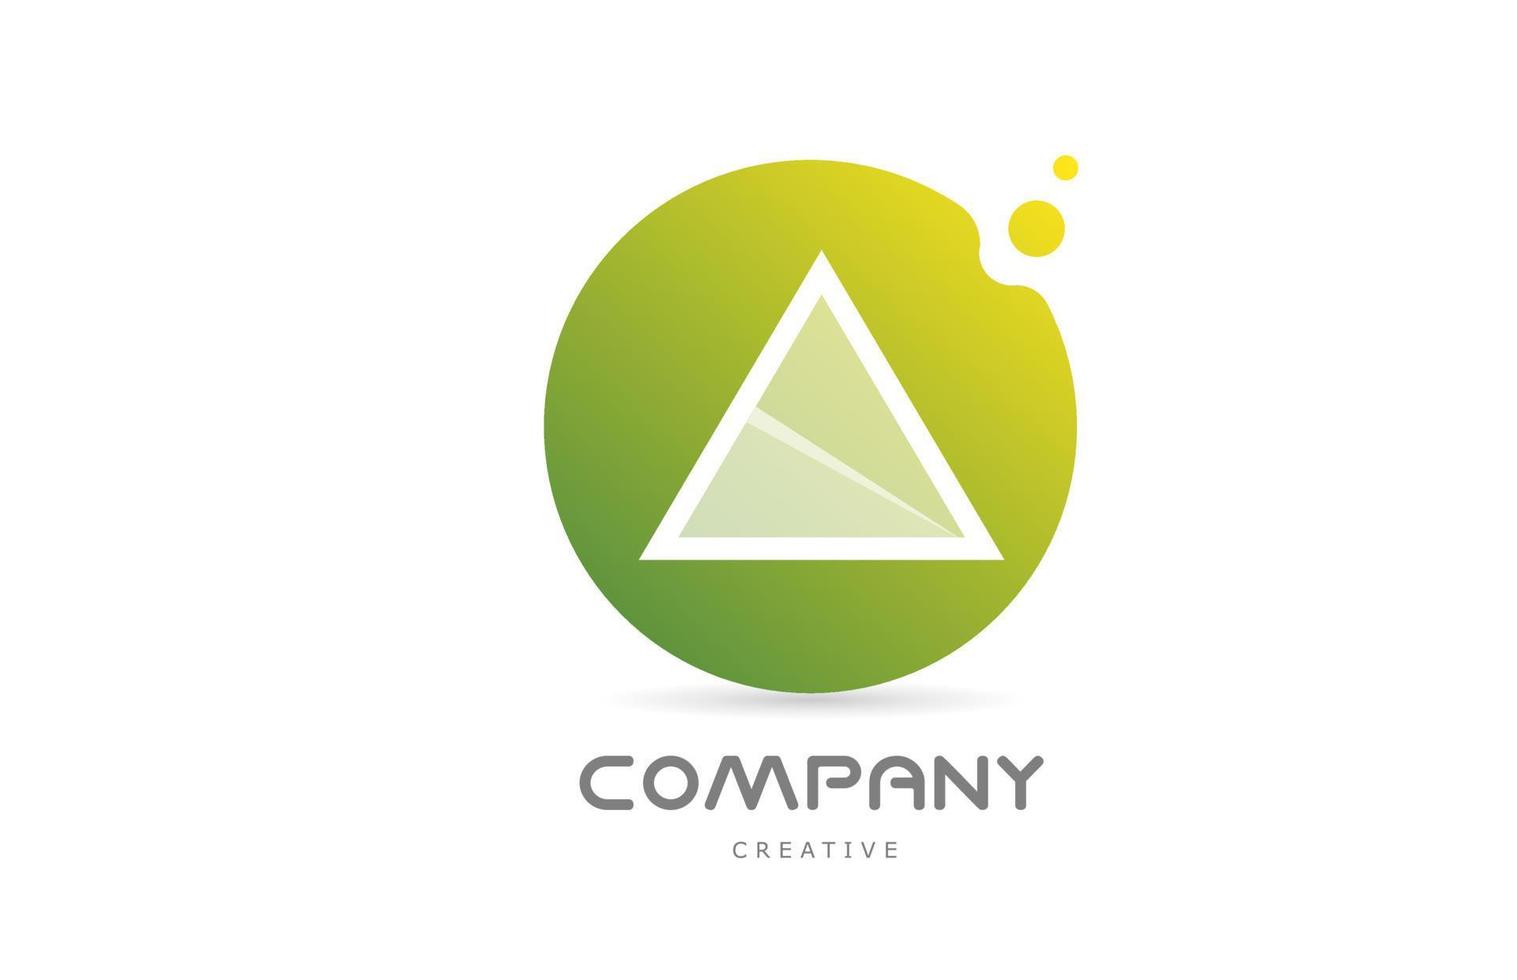 puntos verdes un icono del logotipo de la letra del alfabeto con transparencia blanca. plantilla creativa para negocios vector